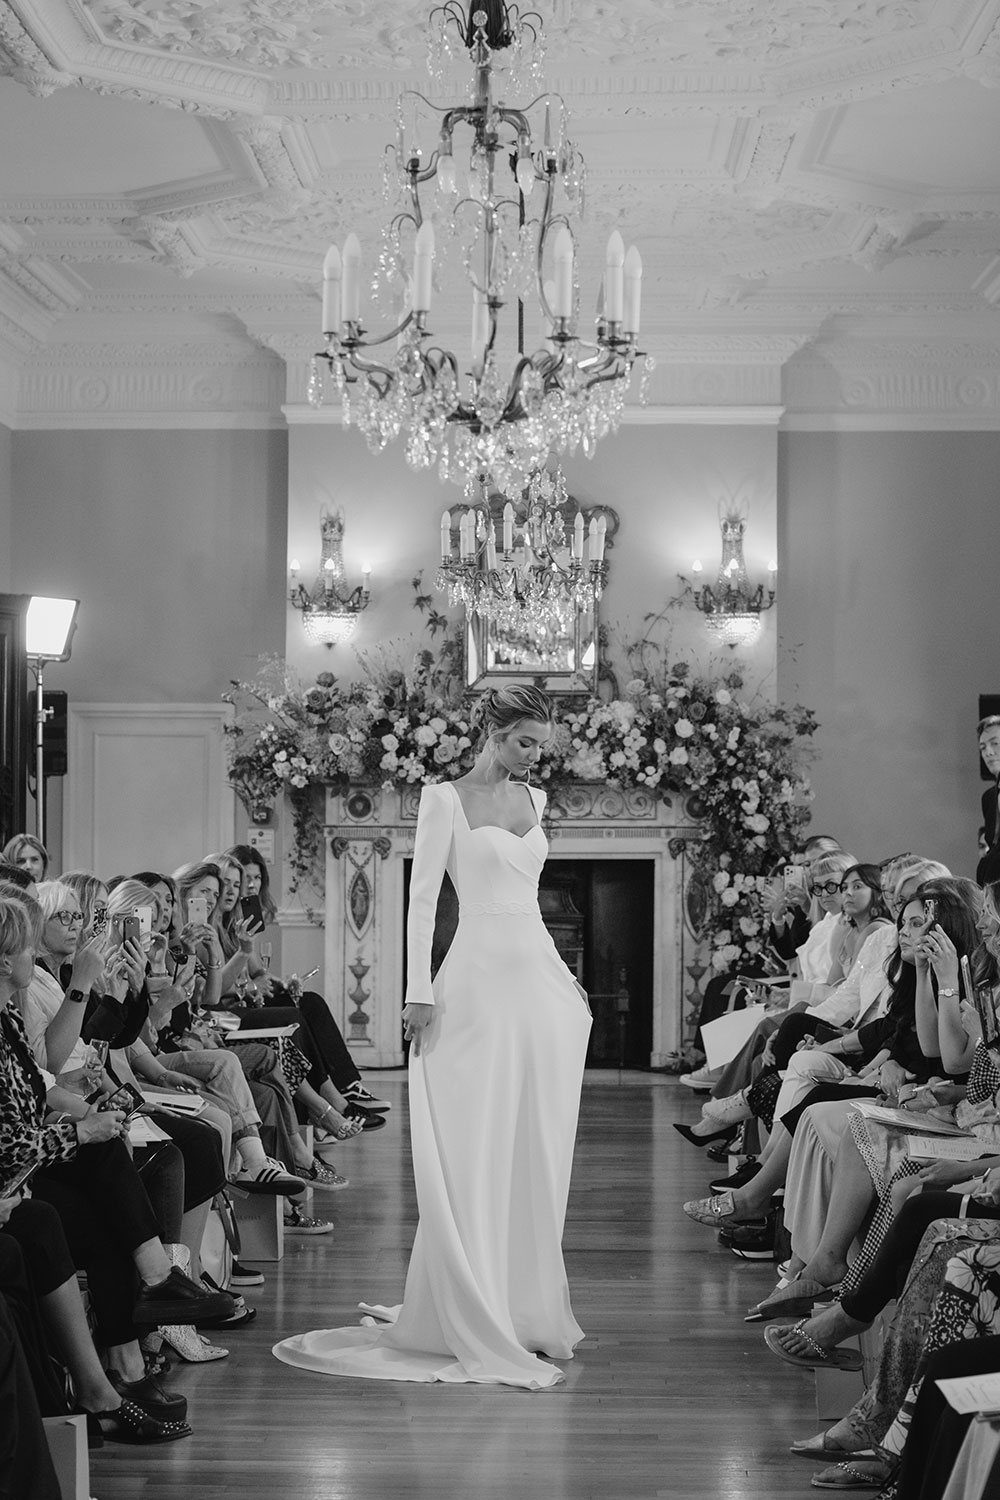 Suzanne Neville Verdi Wedding Dress at Miss Bush bridal boutique in Surrey